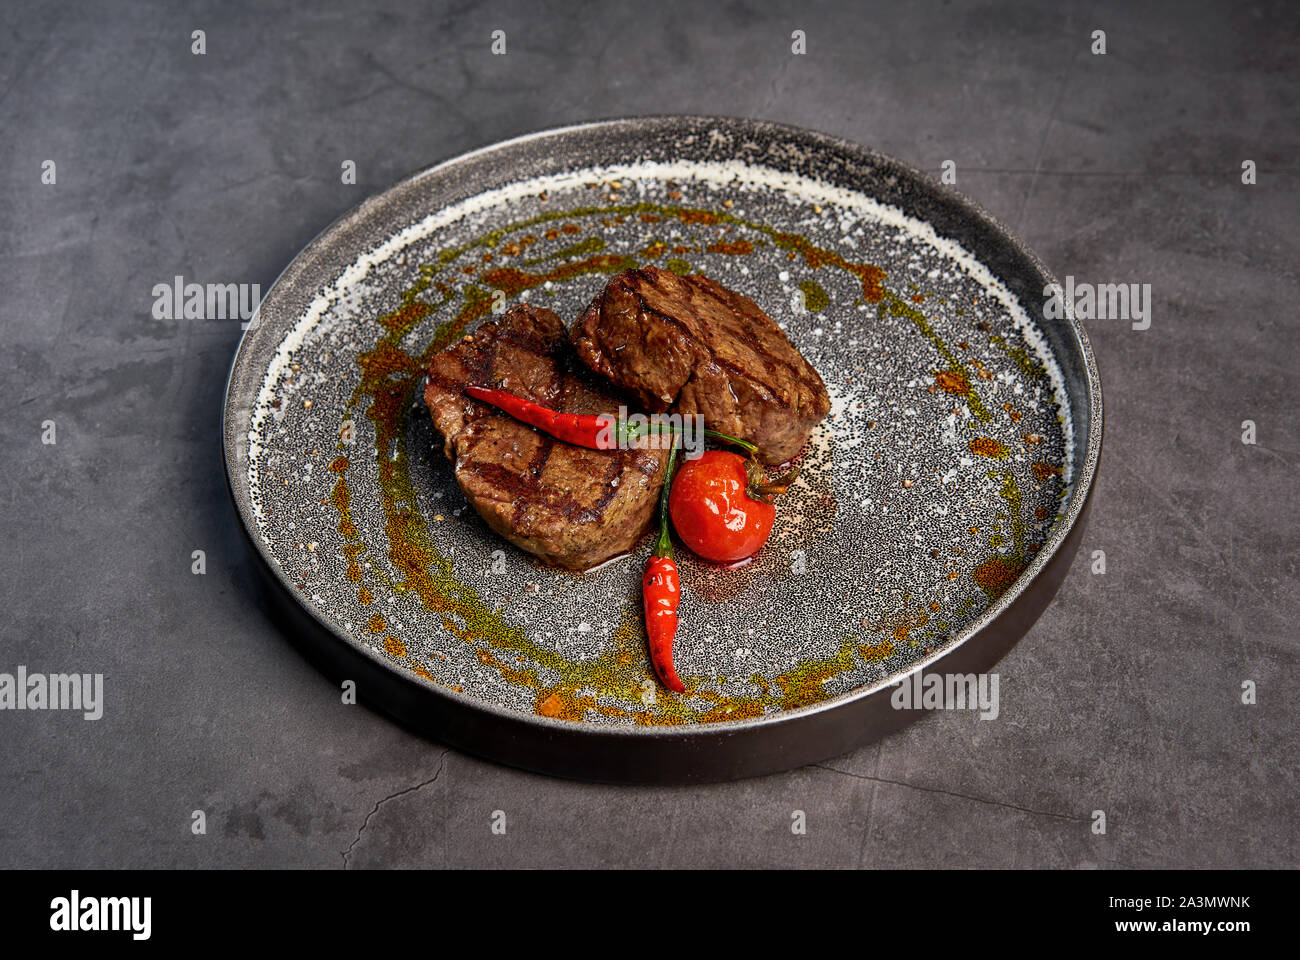 La viande steak au poivre chic sur une plaque Banque D'Images